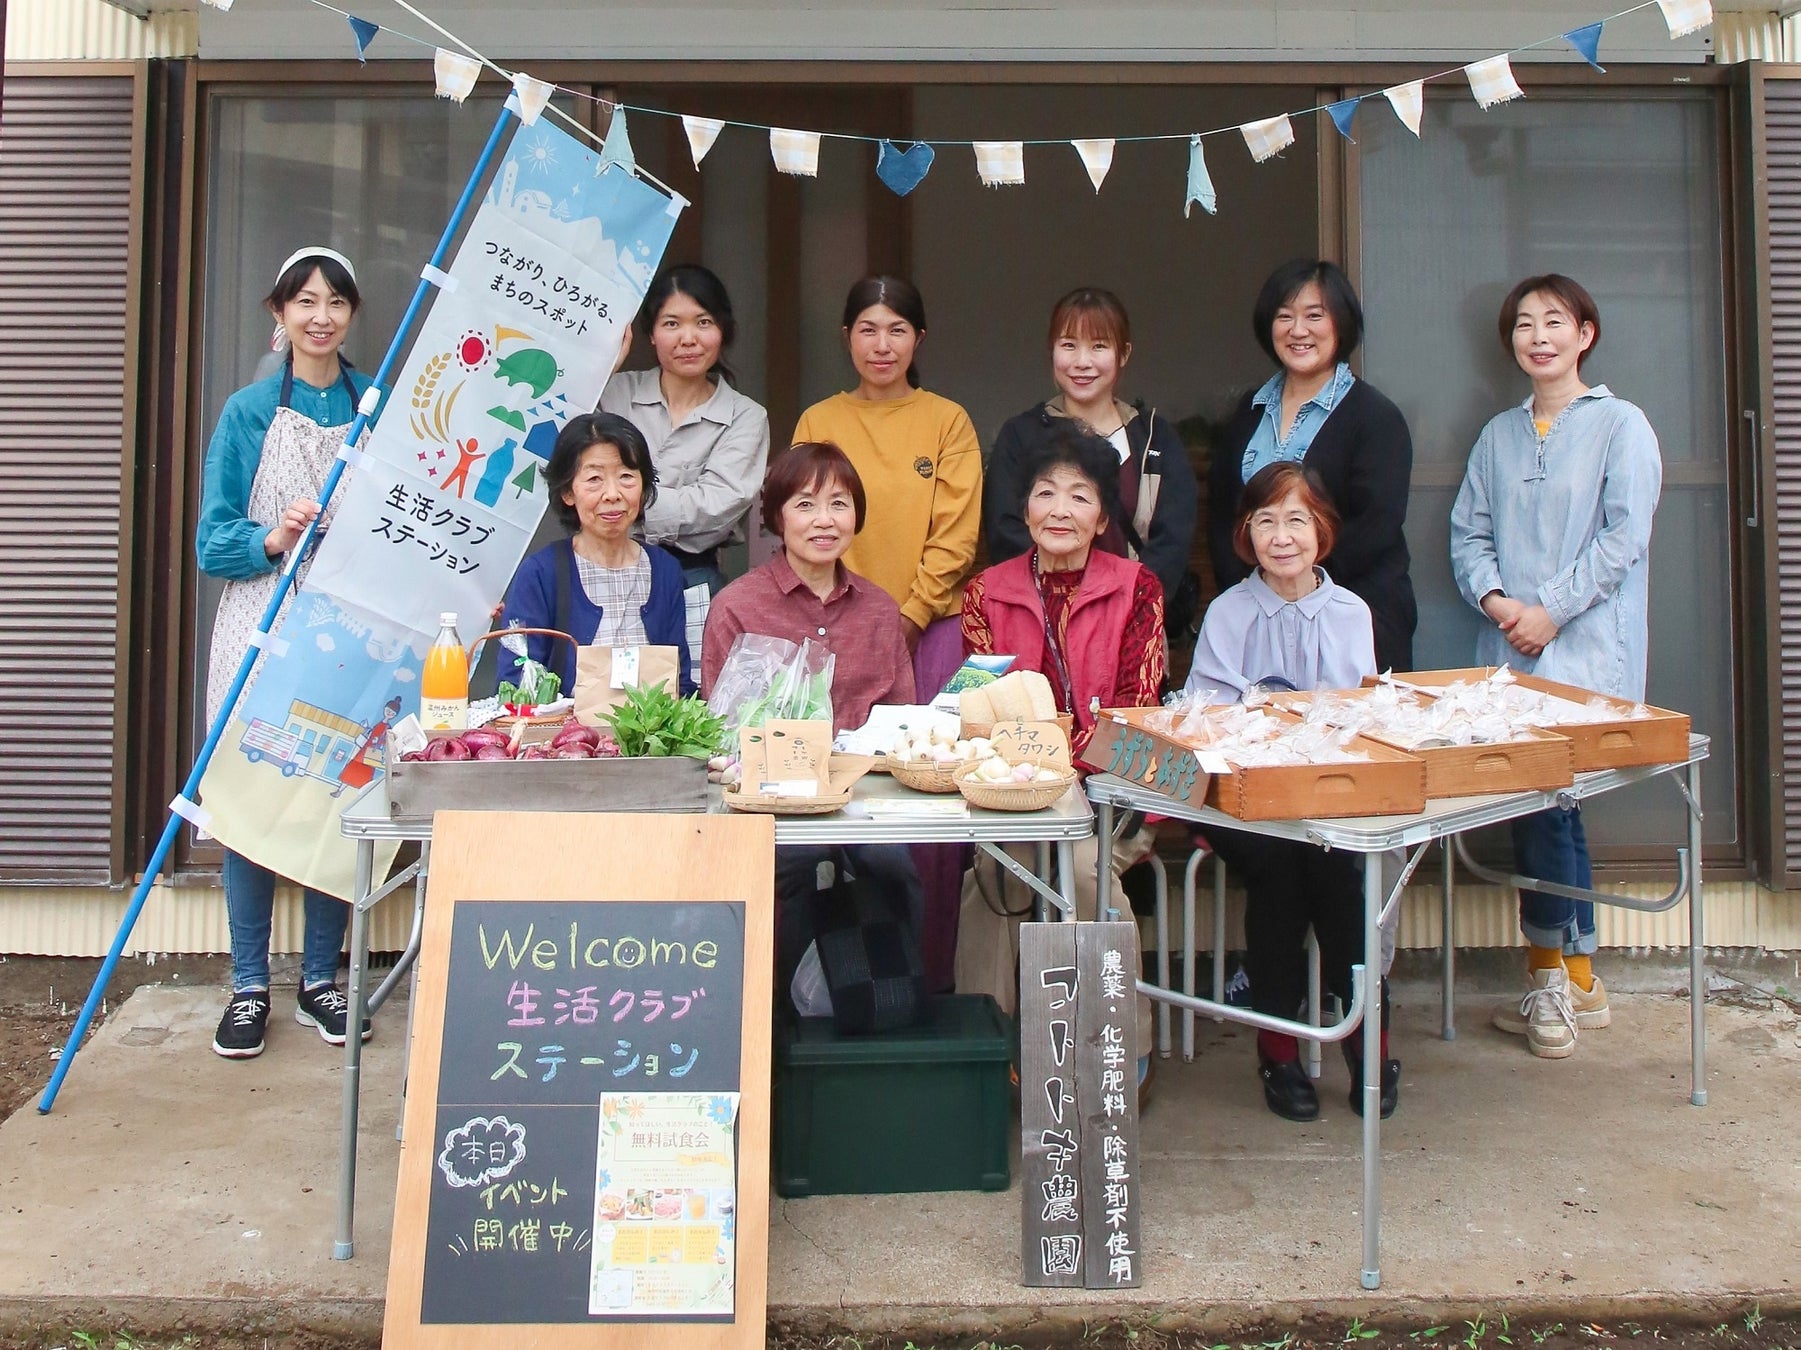 つながり、ひろがる、まちのスポット「生活クラブステーション」を神奈川県内5ヶ所にオープン